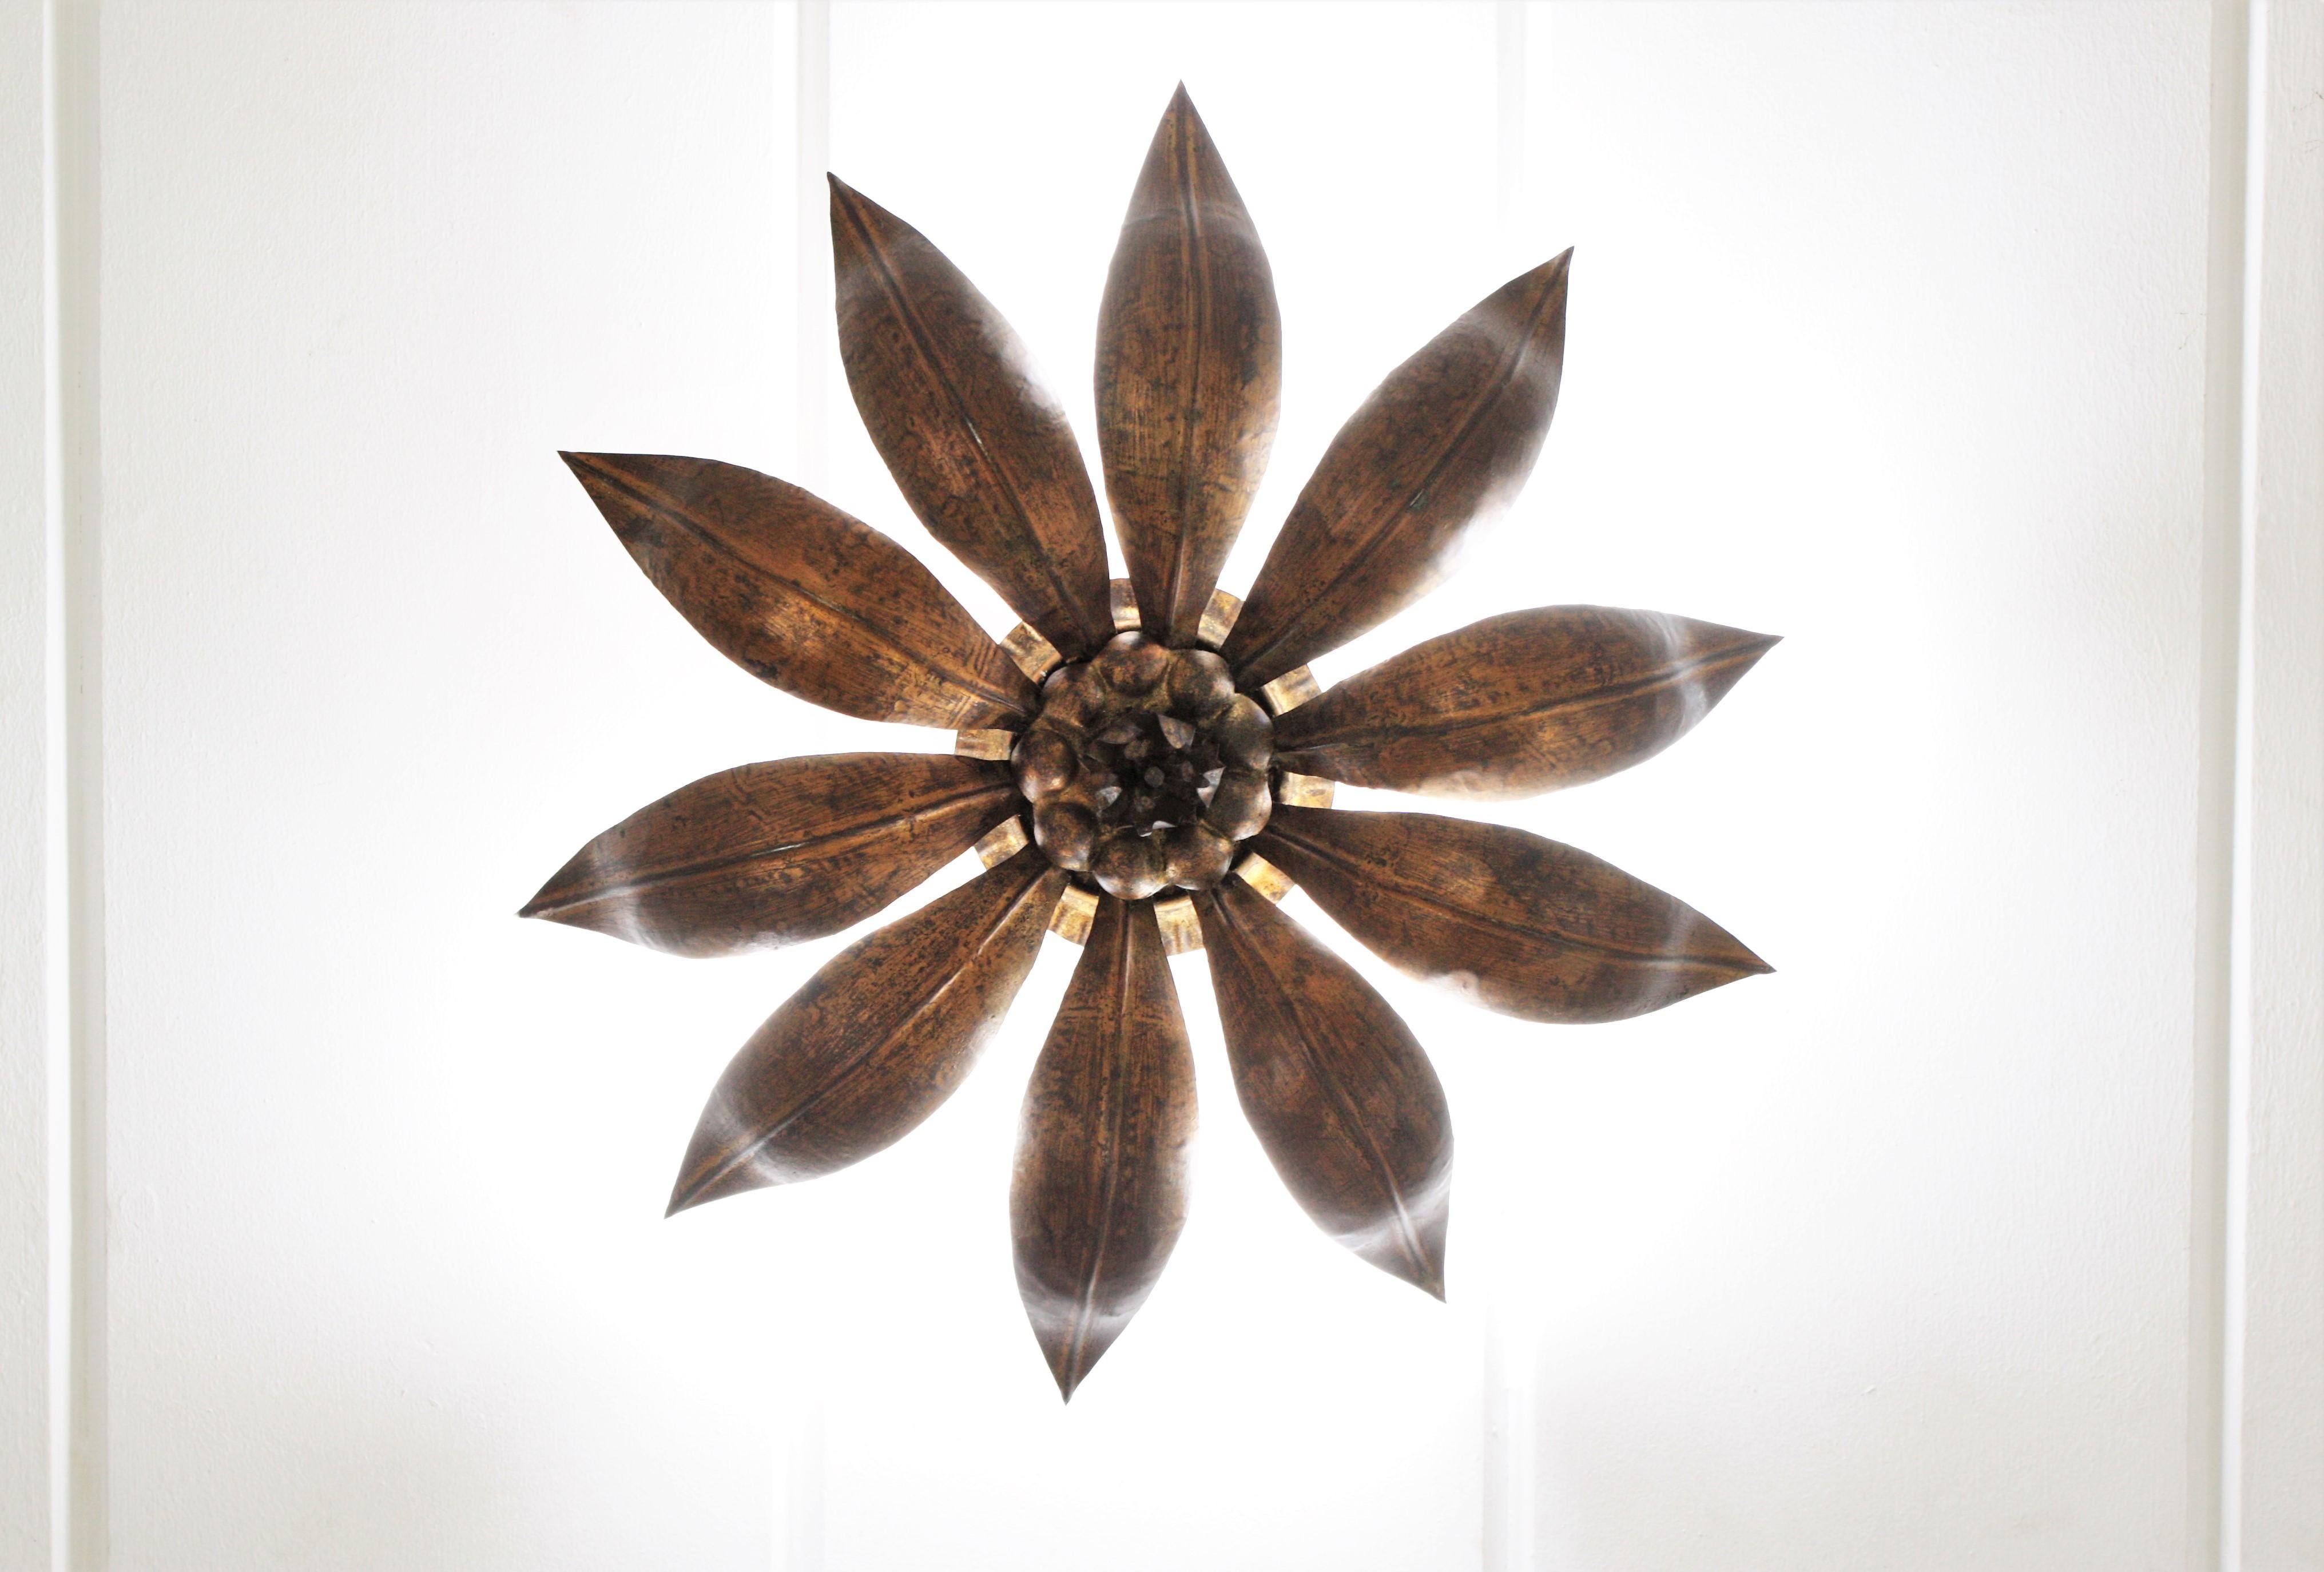 French Sunburst Flower Ceiling Light Fixture in Bronze Gilt Iron, 1940s For Sale 2